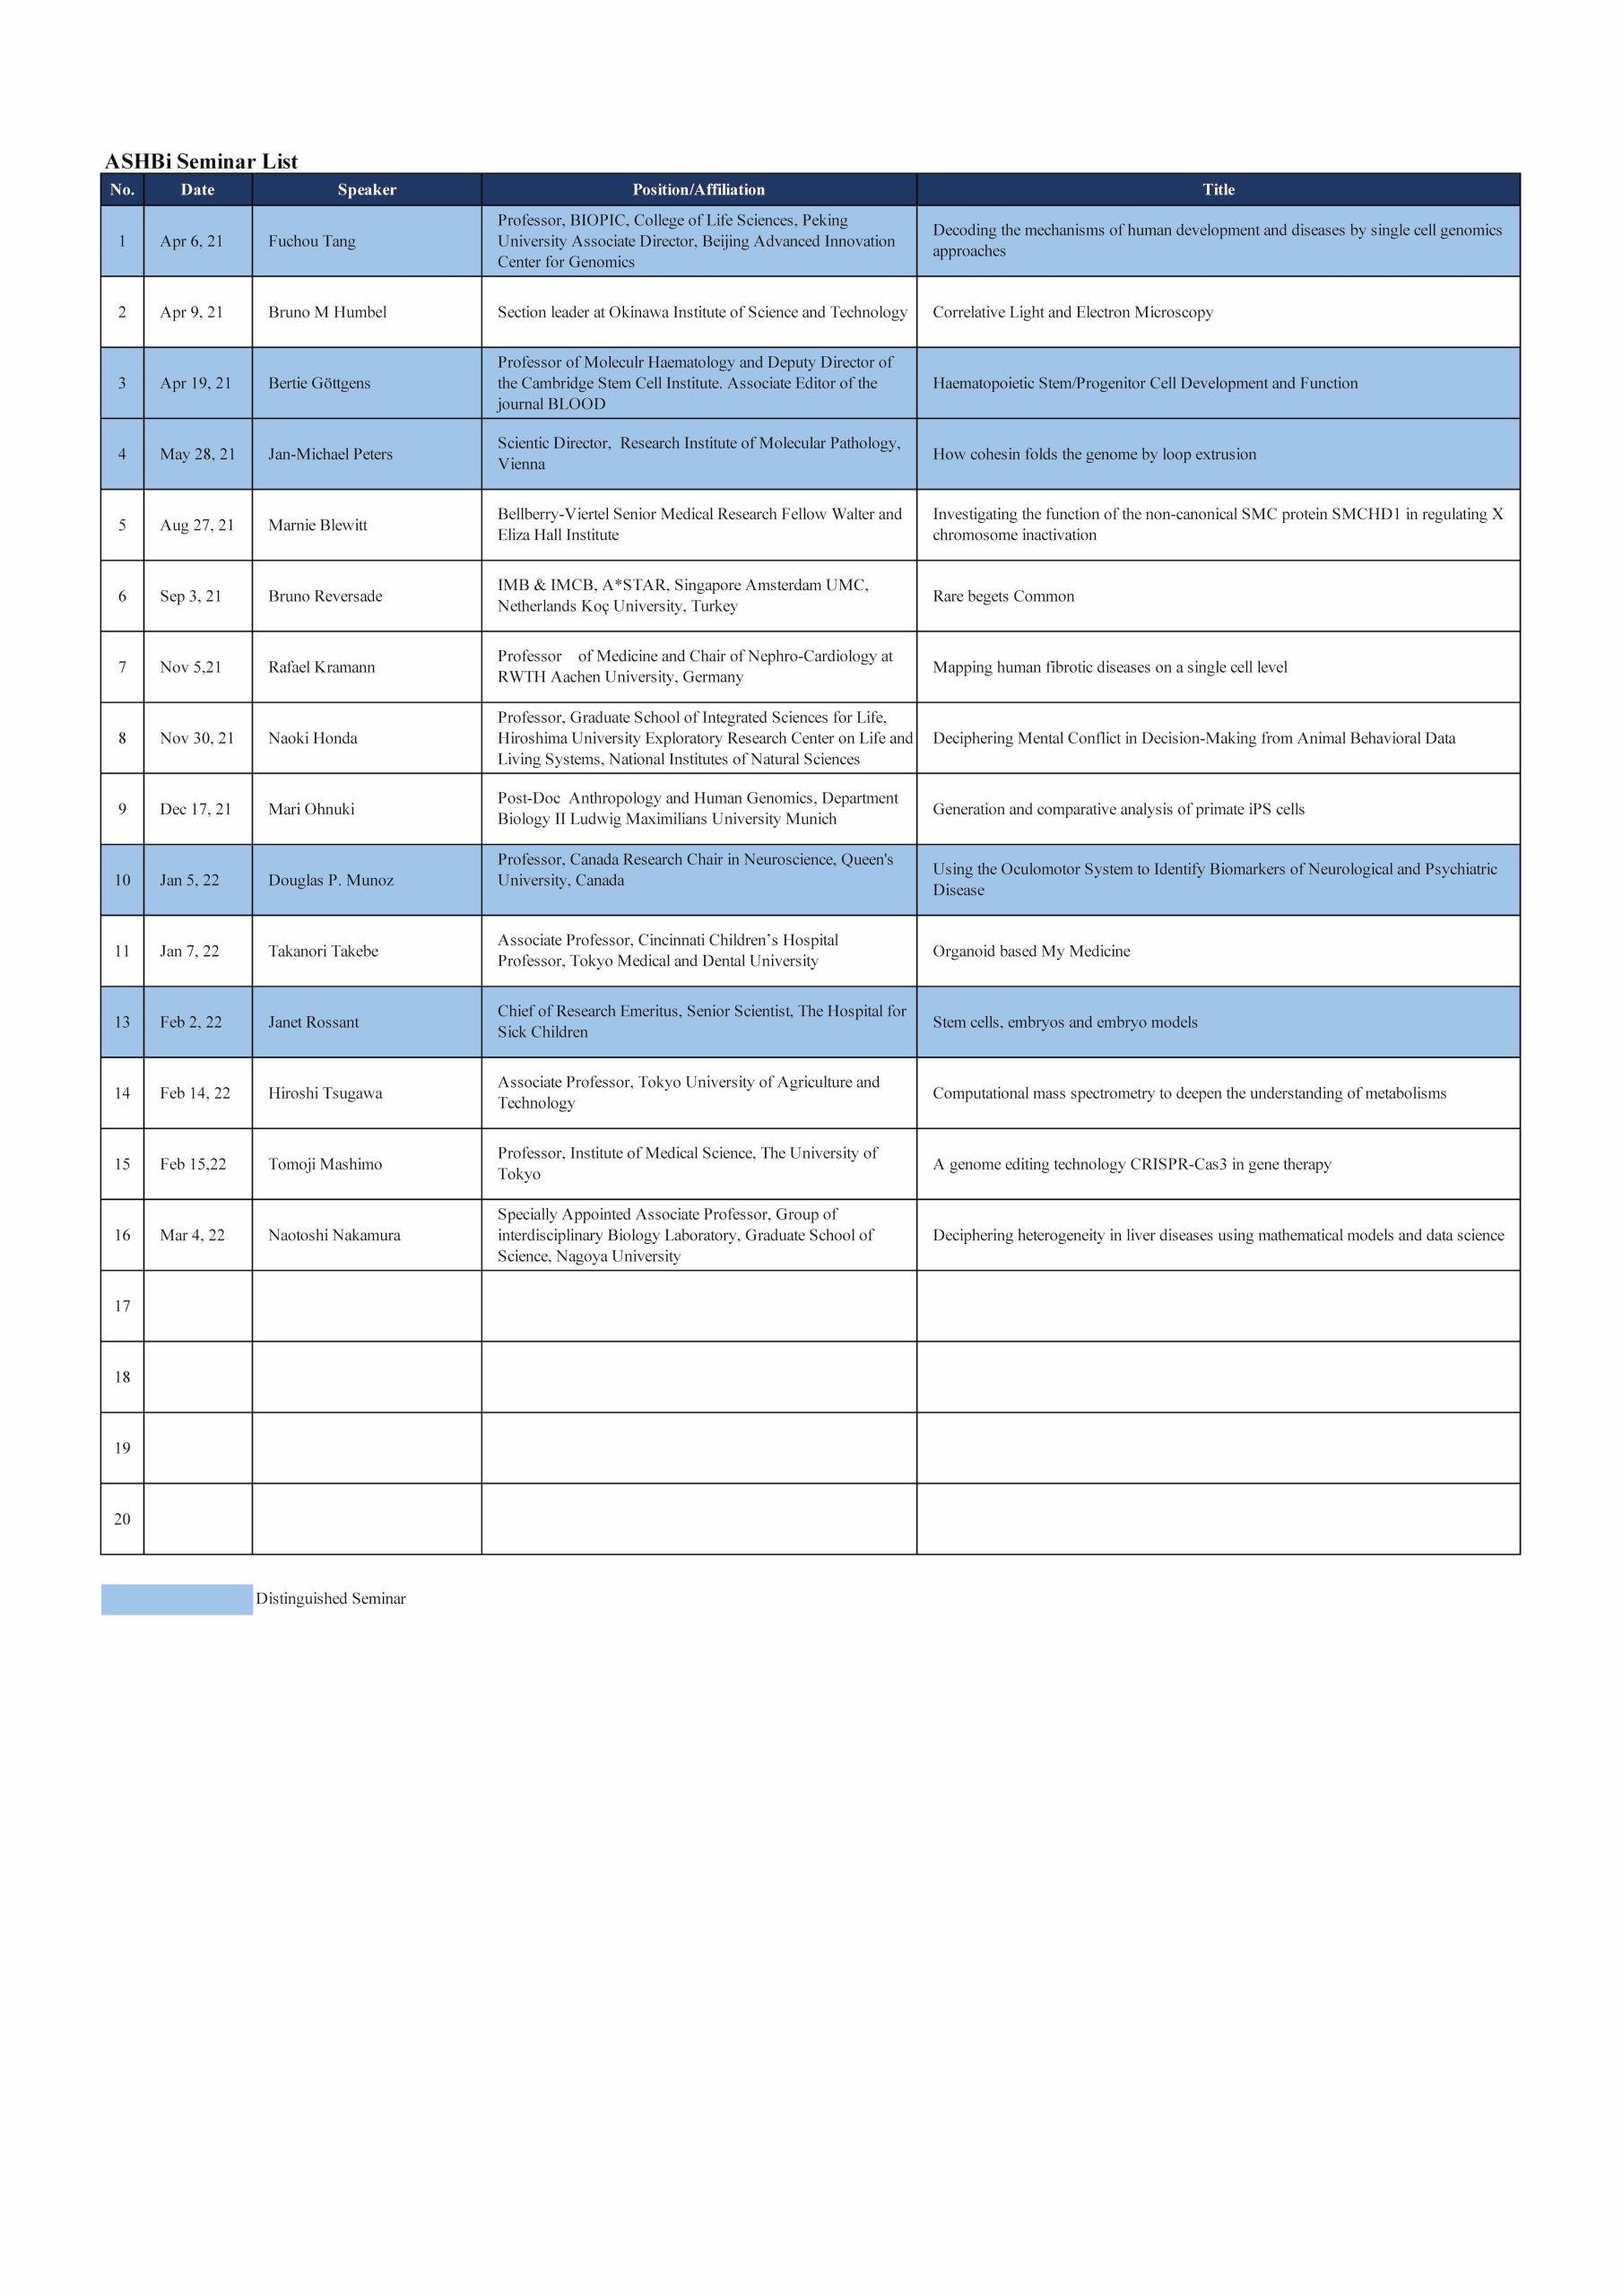 ASHBi Seminar List (Apr2021-Mar2022)